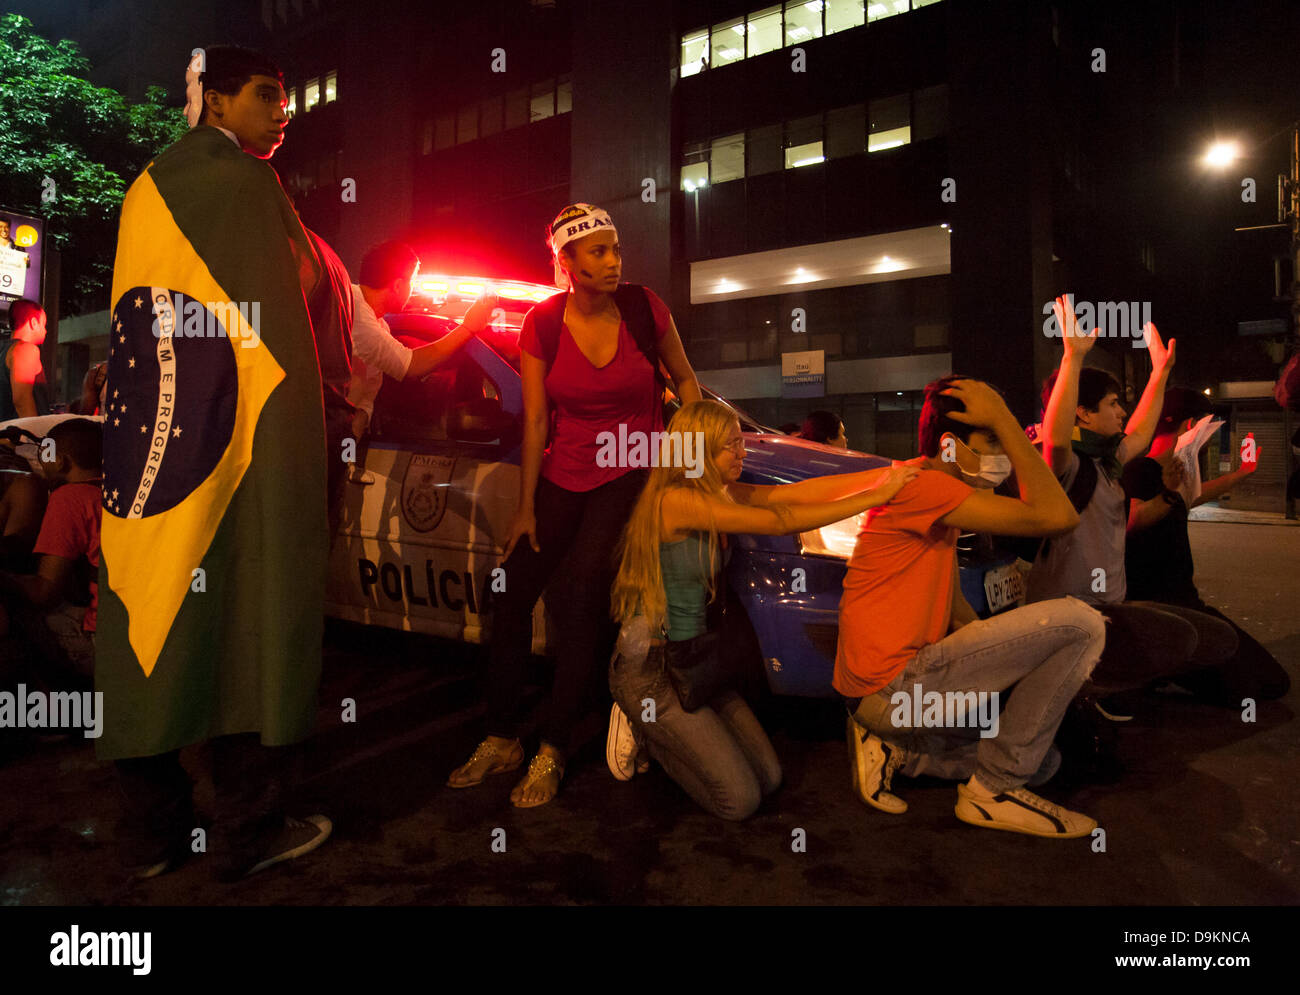 Rio de Janeiro, Brésil 20 juin 2013. Les manifestants effrayés autour d'un abri voiture de police militaire dans l'Avenida Rio Branco, comme le 'Batalhão de Choque', la police antiémeute' pass par proximité, après la dispersion de manifestants en utilisant des gaz lacrymogènes et des balles en caoutchouc dans le centre de Rio de Janeiro, Brésil 20 juin 2013 Crédit : Peter M. Wilson/Alamy Live News Banque D'Images